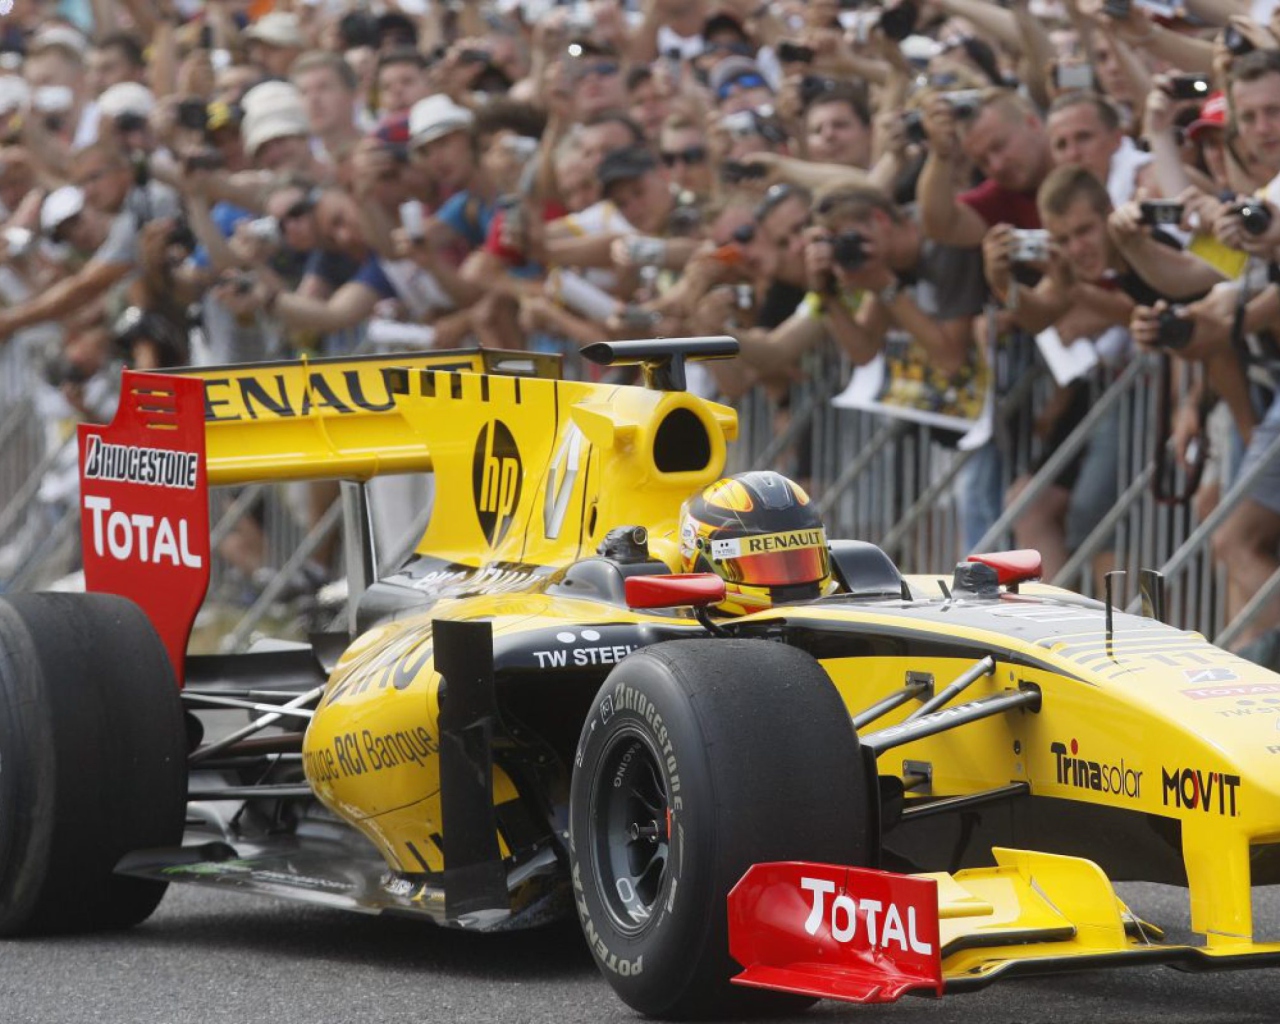 Das N-Gine Renault F1 Team Show, Robert Kubica Wallpaper 1280x1024